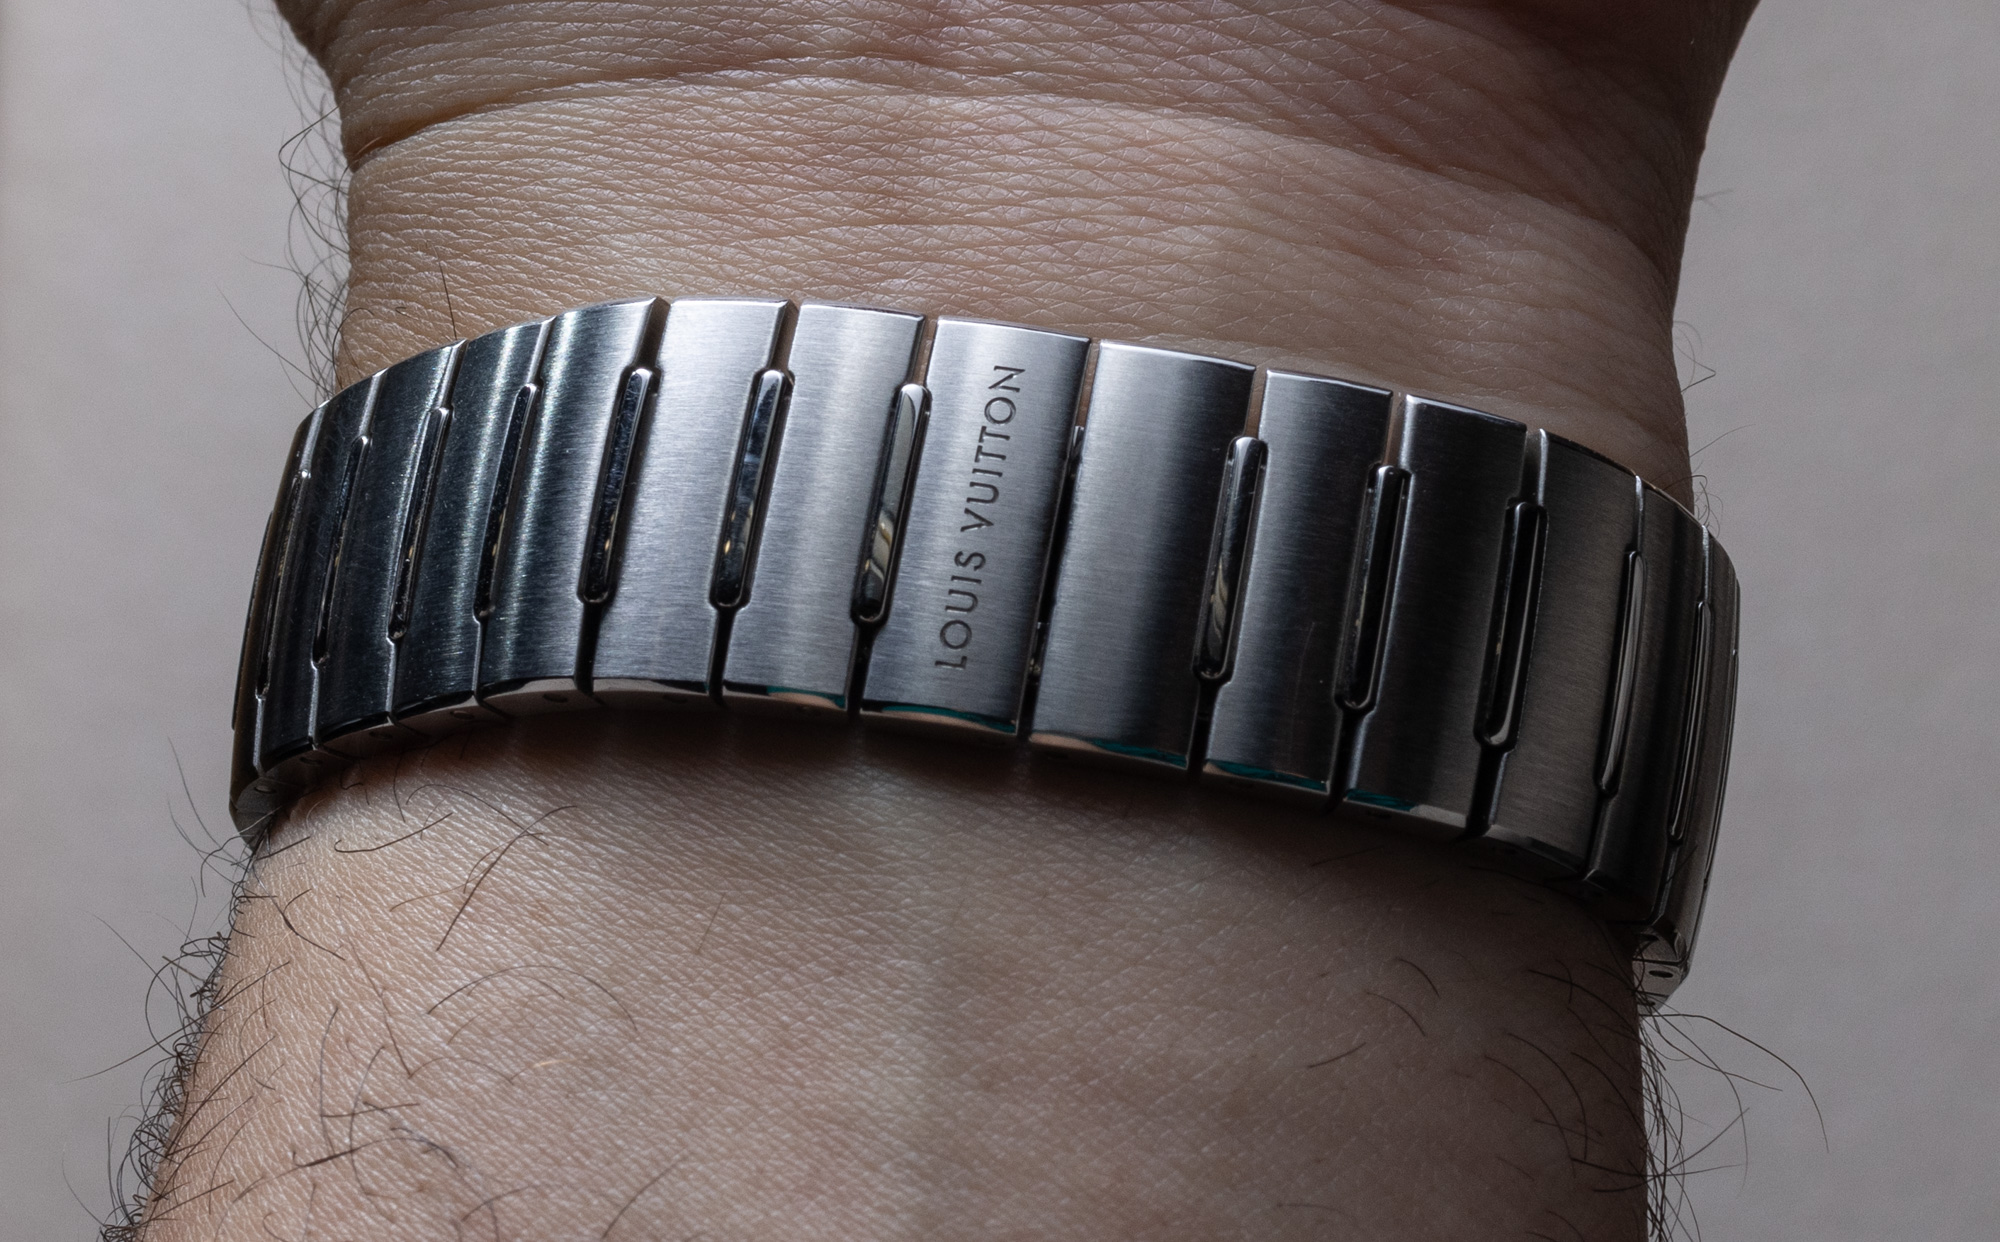 Lot - Louis Vuitton Space Bracelet